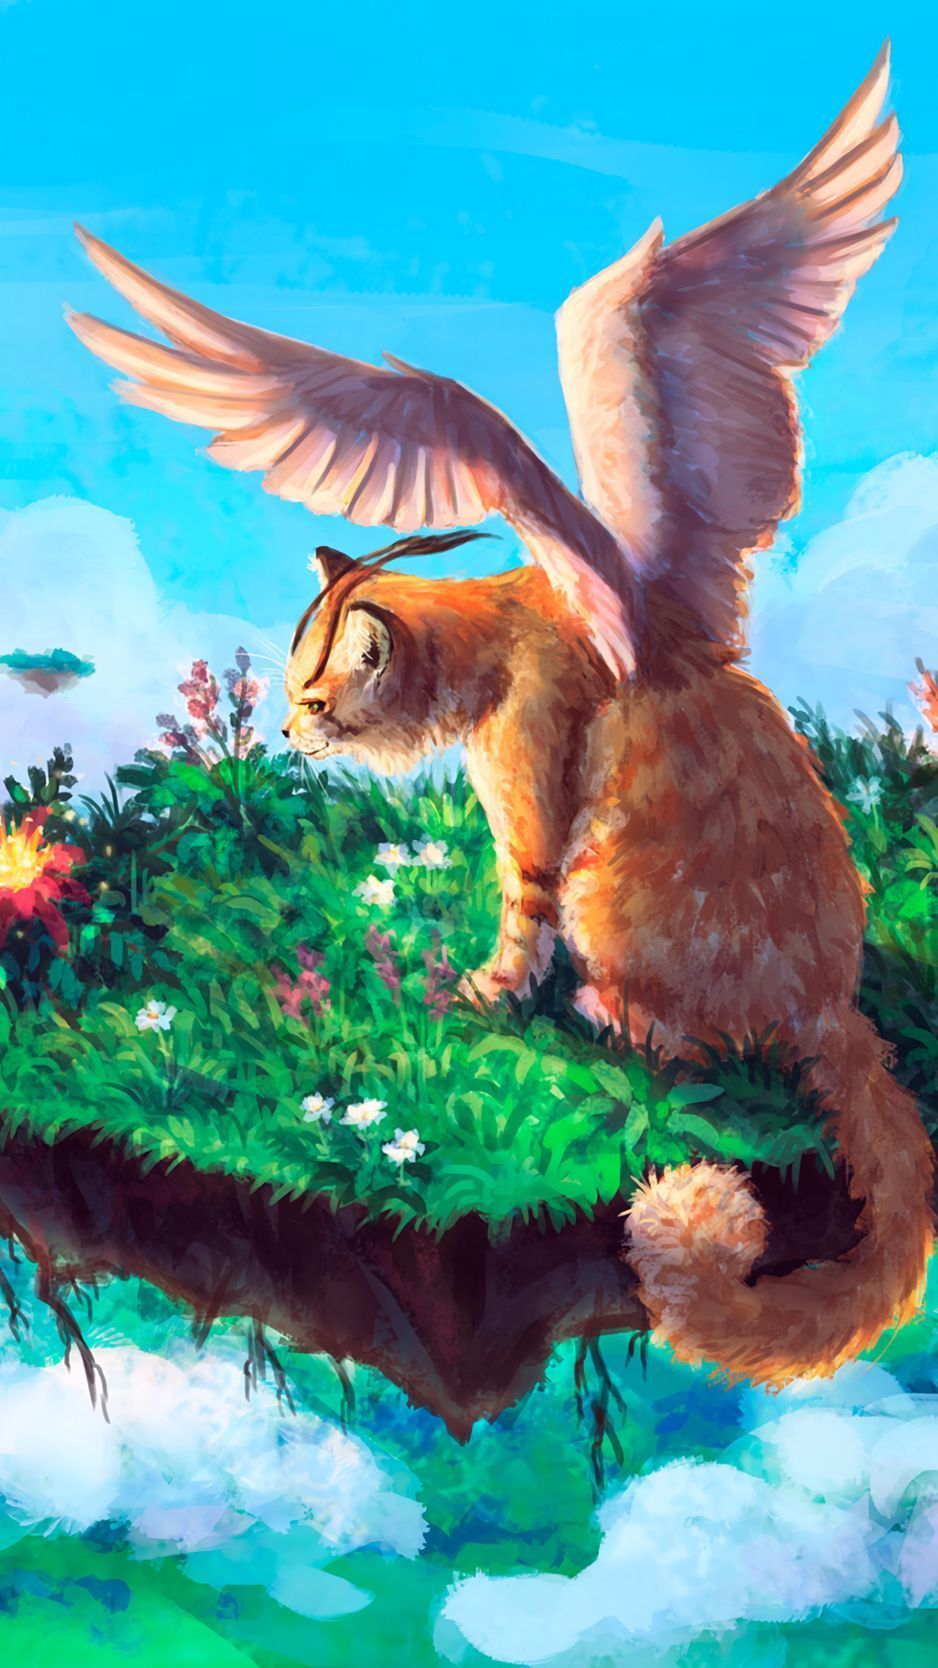 Download wallpaper 938x1668 animal, fantasy, art, cat, wings